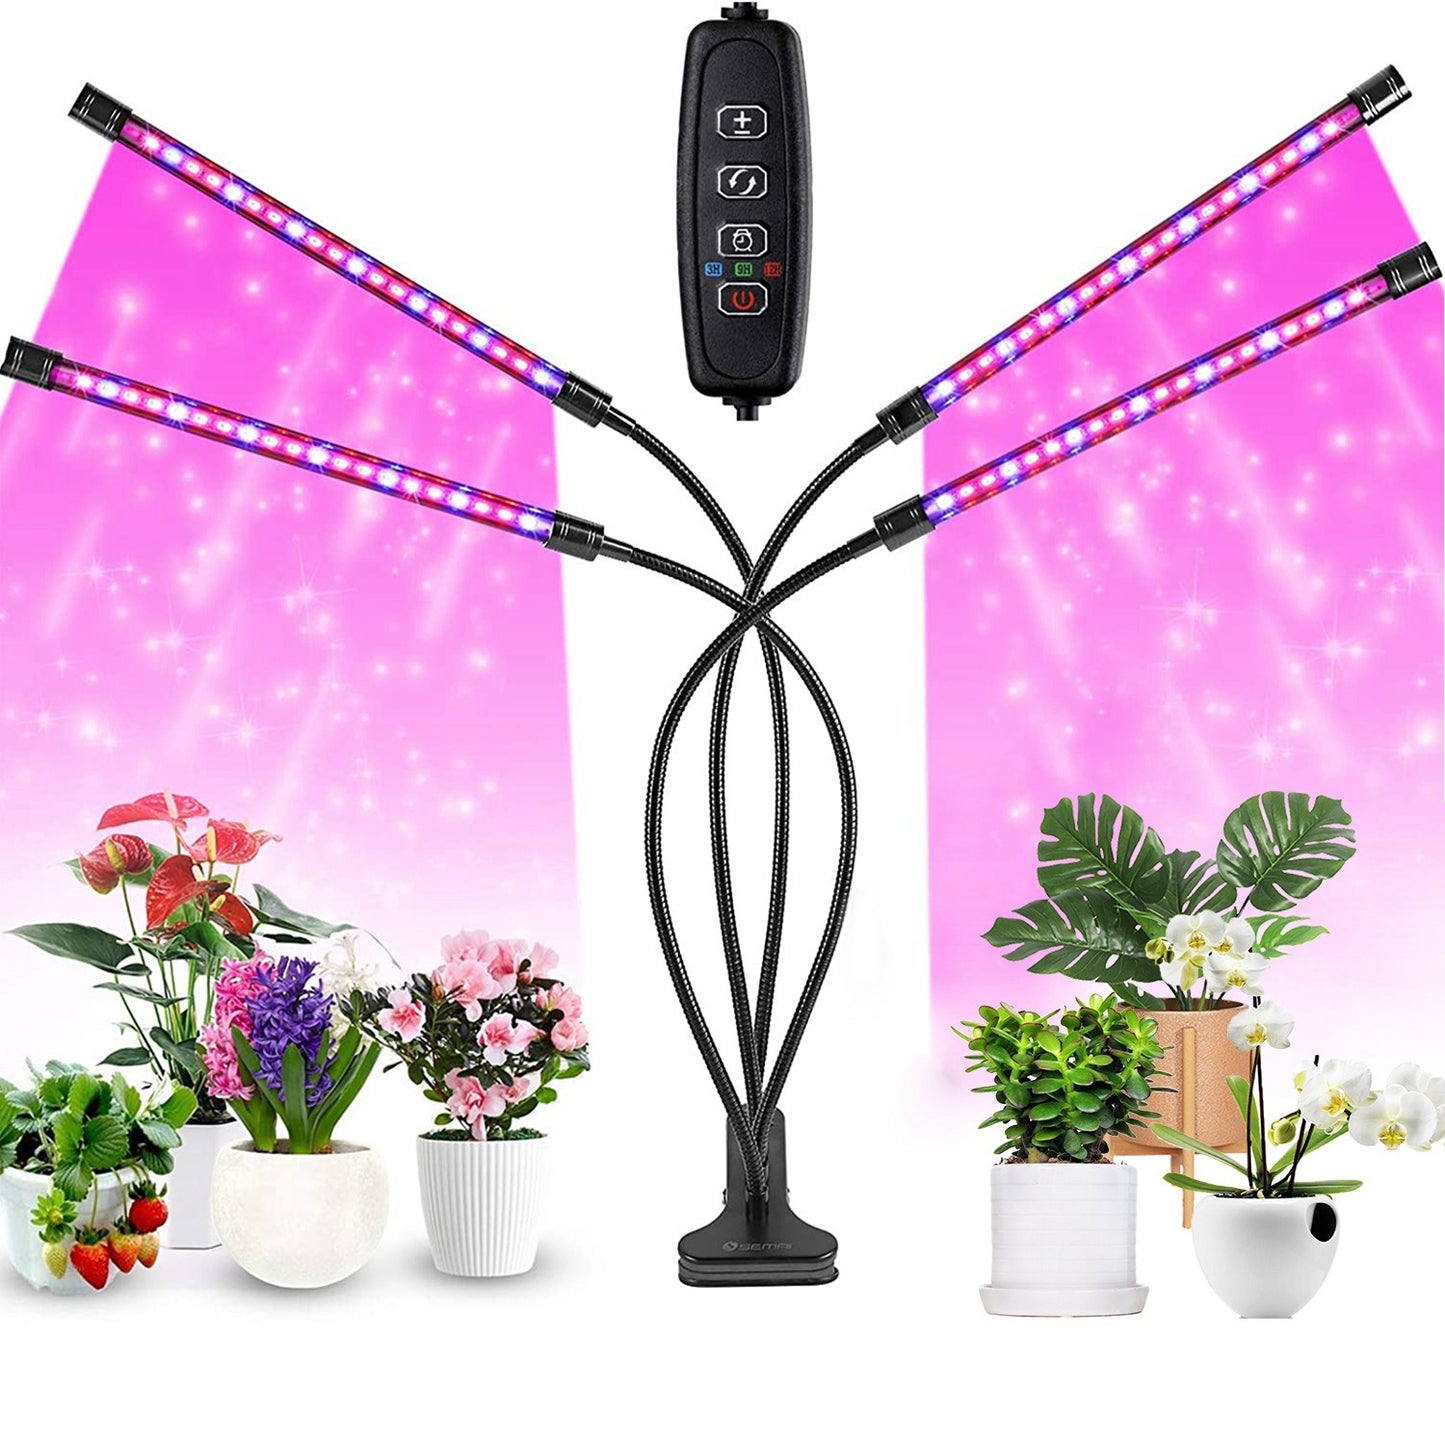 Grow Lights for Indoor Plants, iMounTEK 80W 80 LEDs Plant Lights